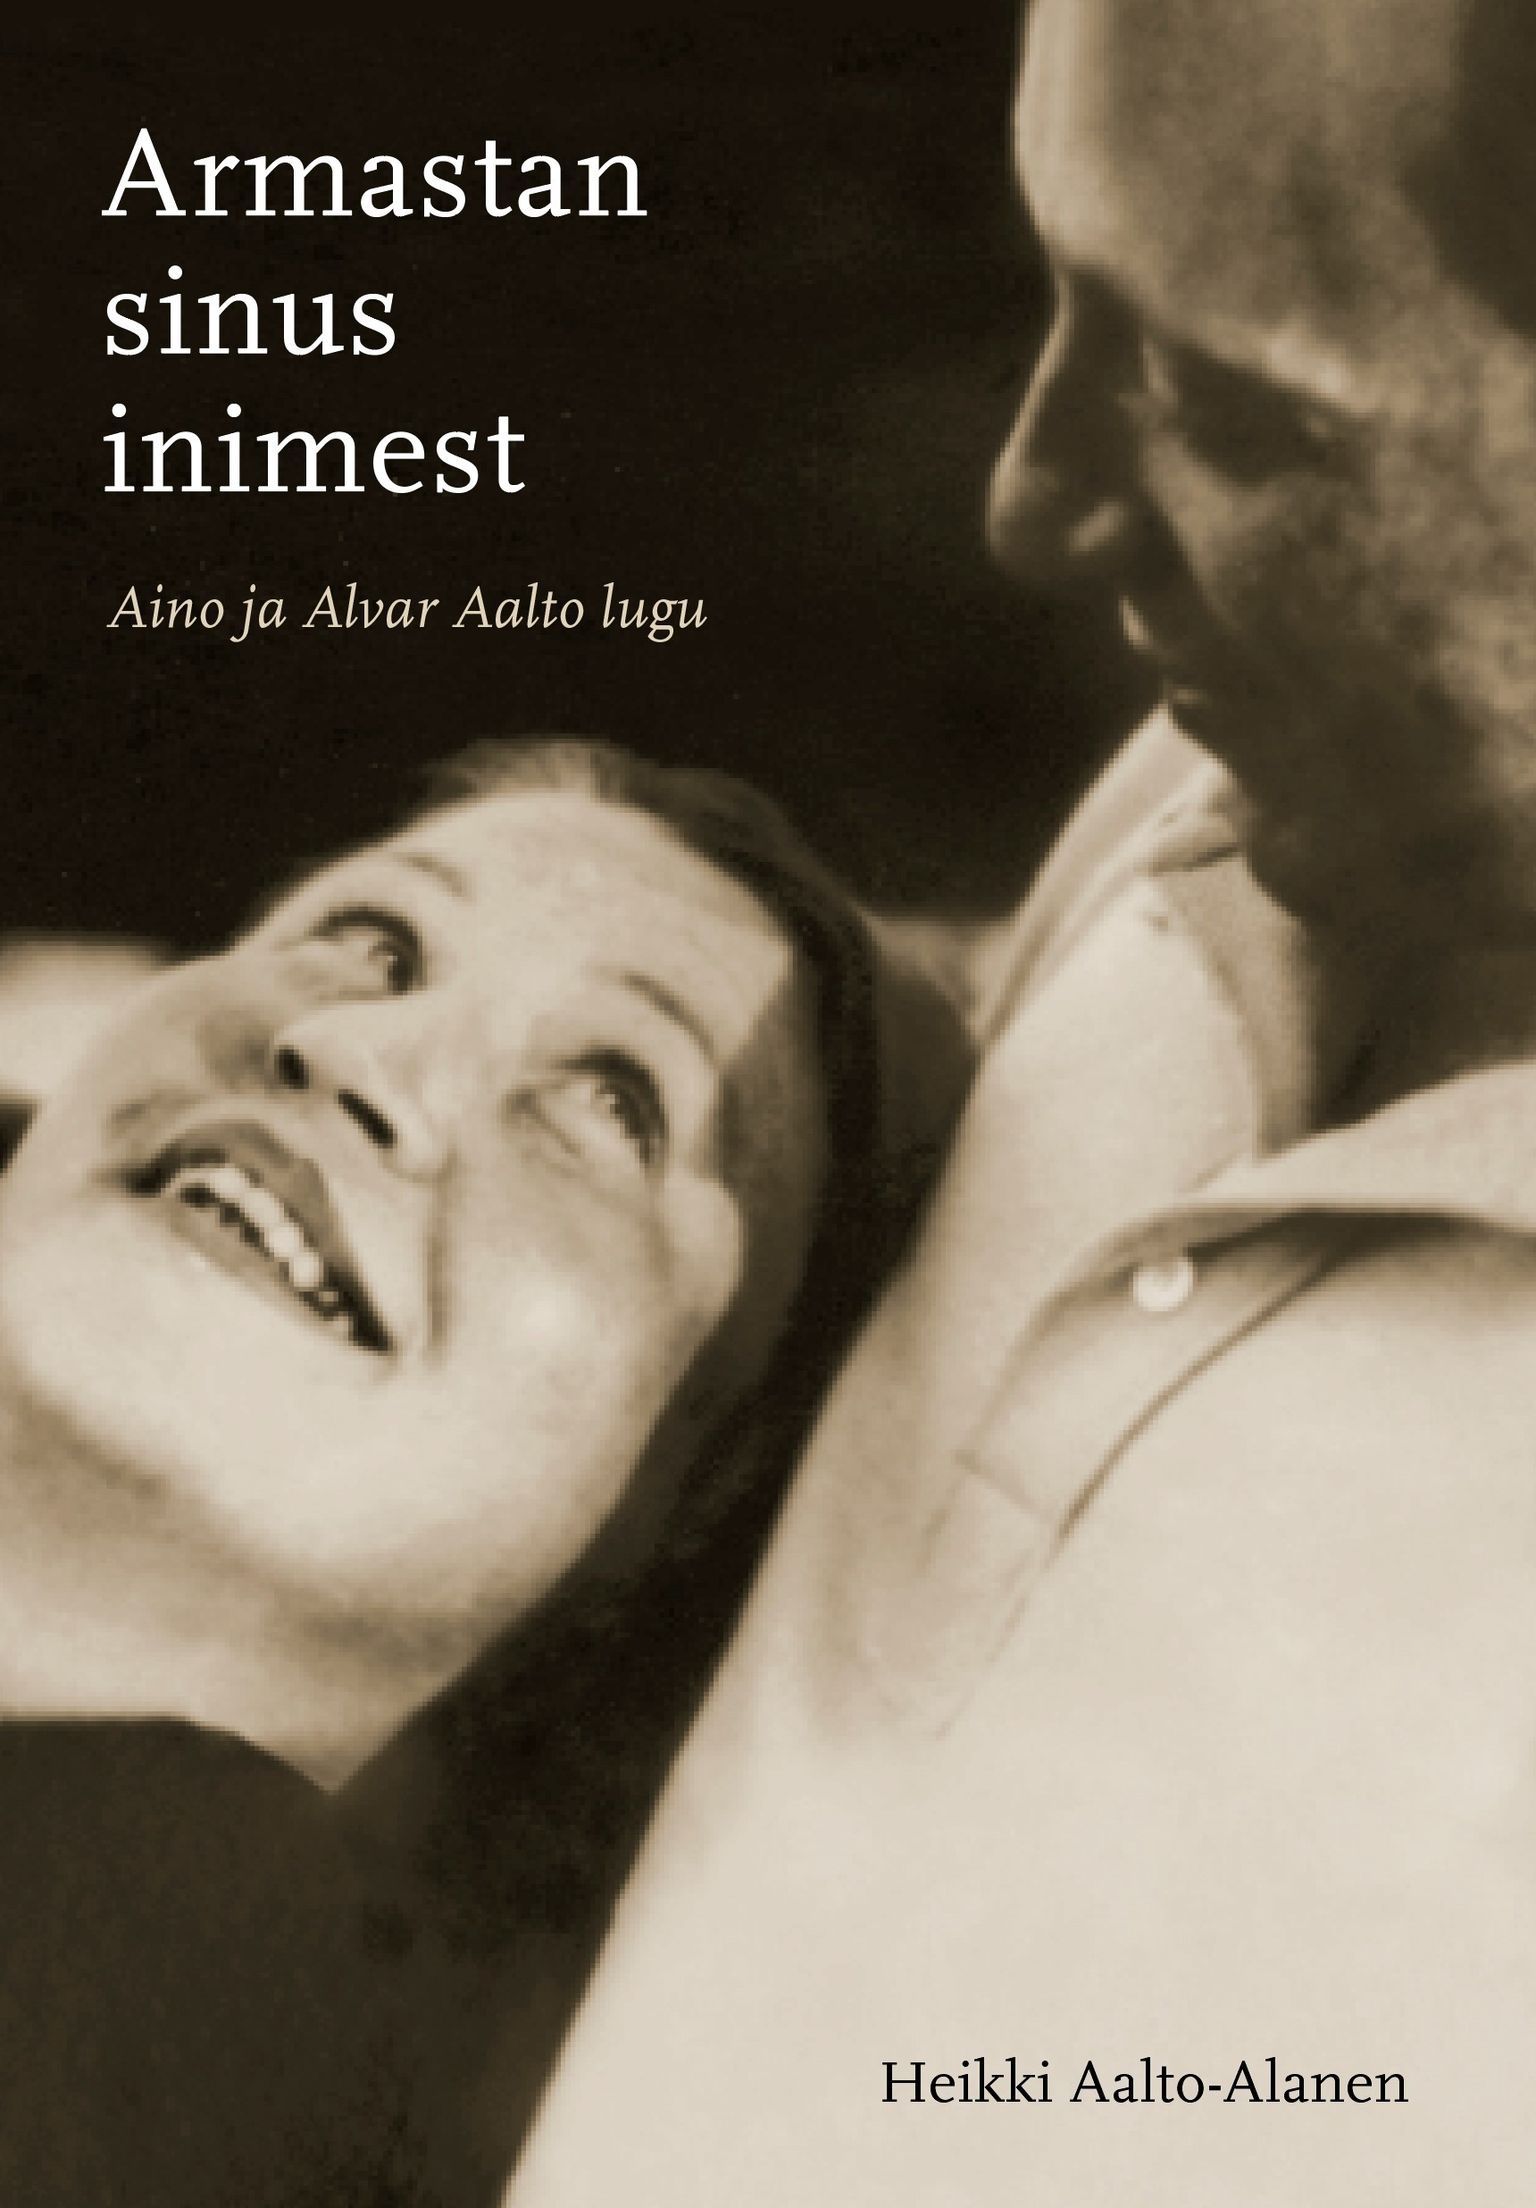 Heikki Aalto-Alanen, «Armastan sinus inimest. Aino ja Alvar Aalto lugu».